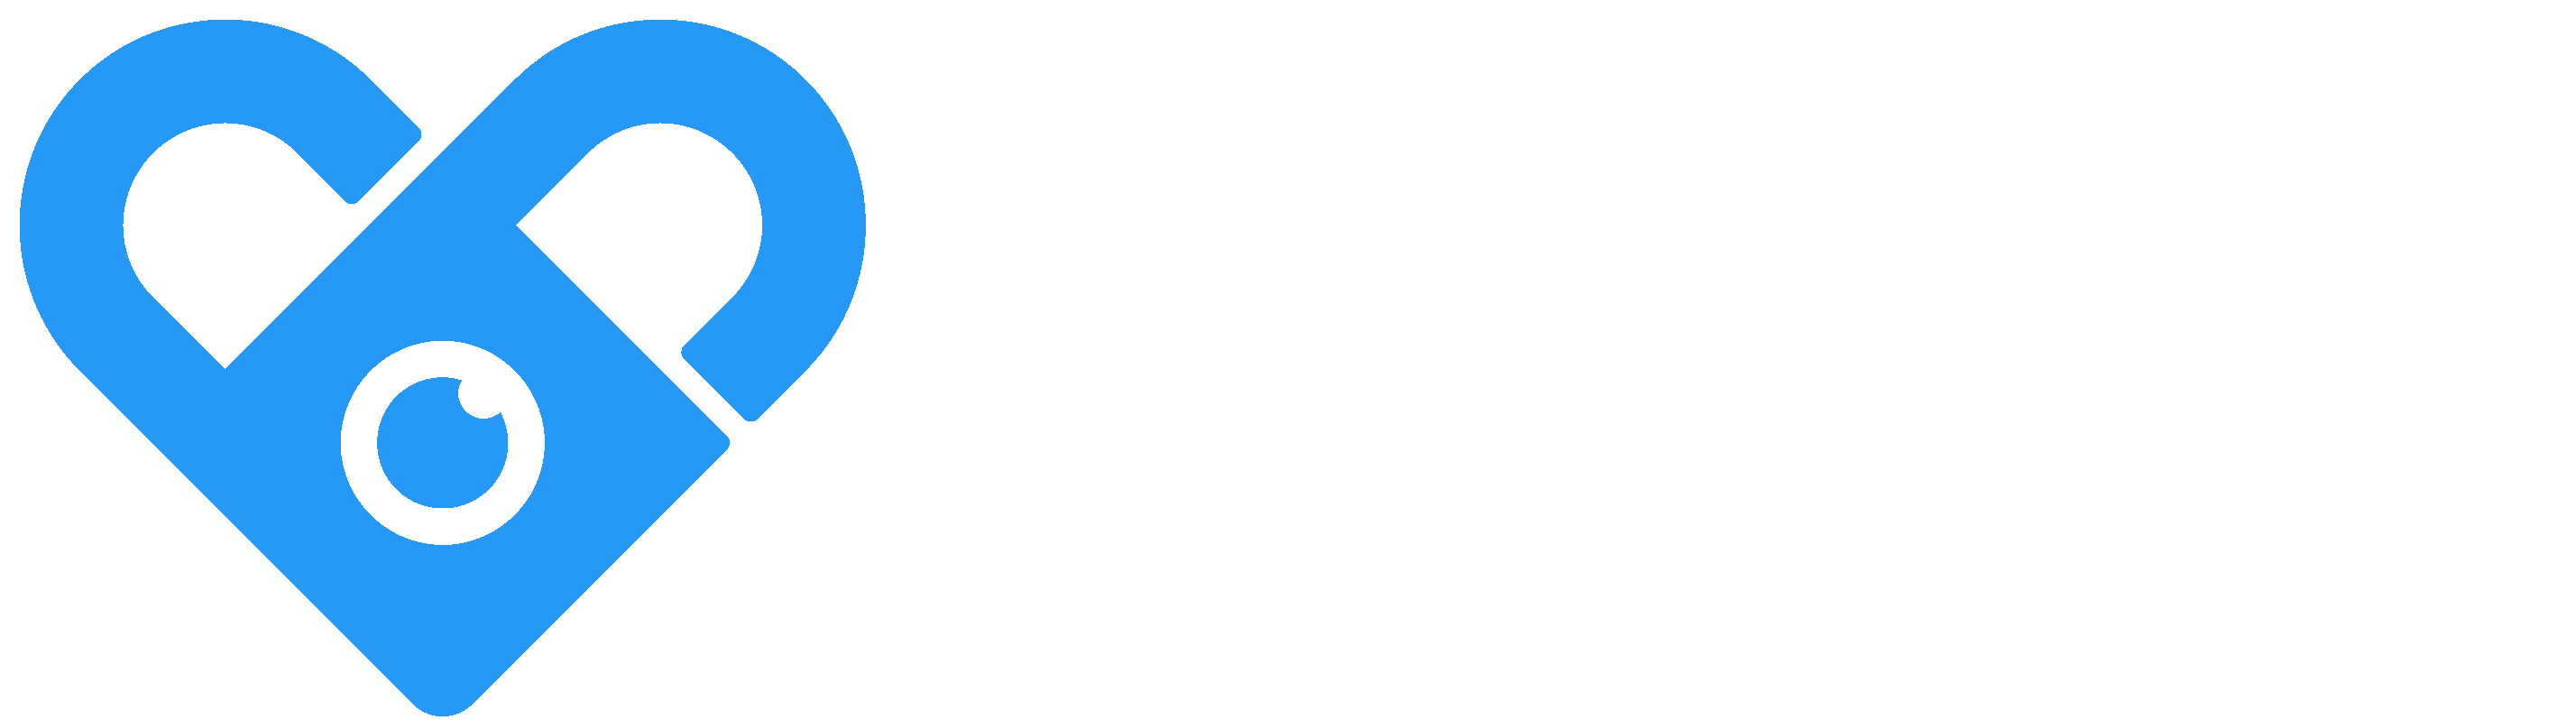 Www.fansly.com